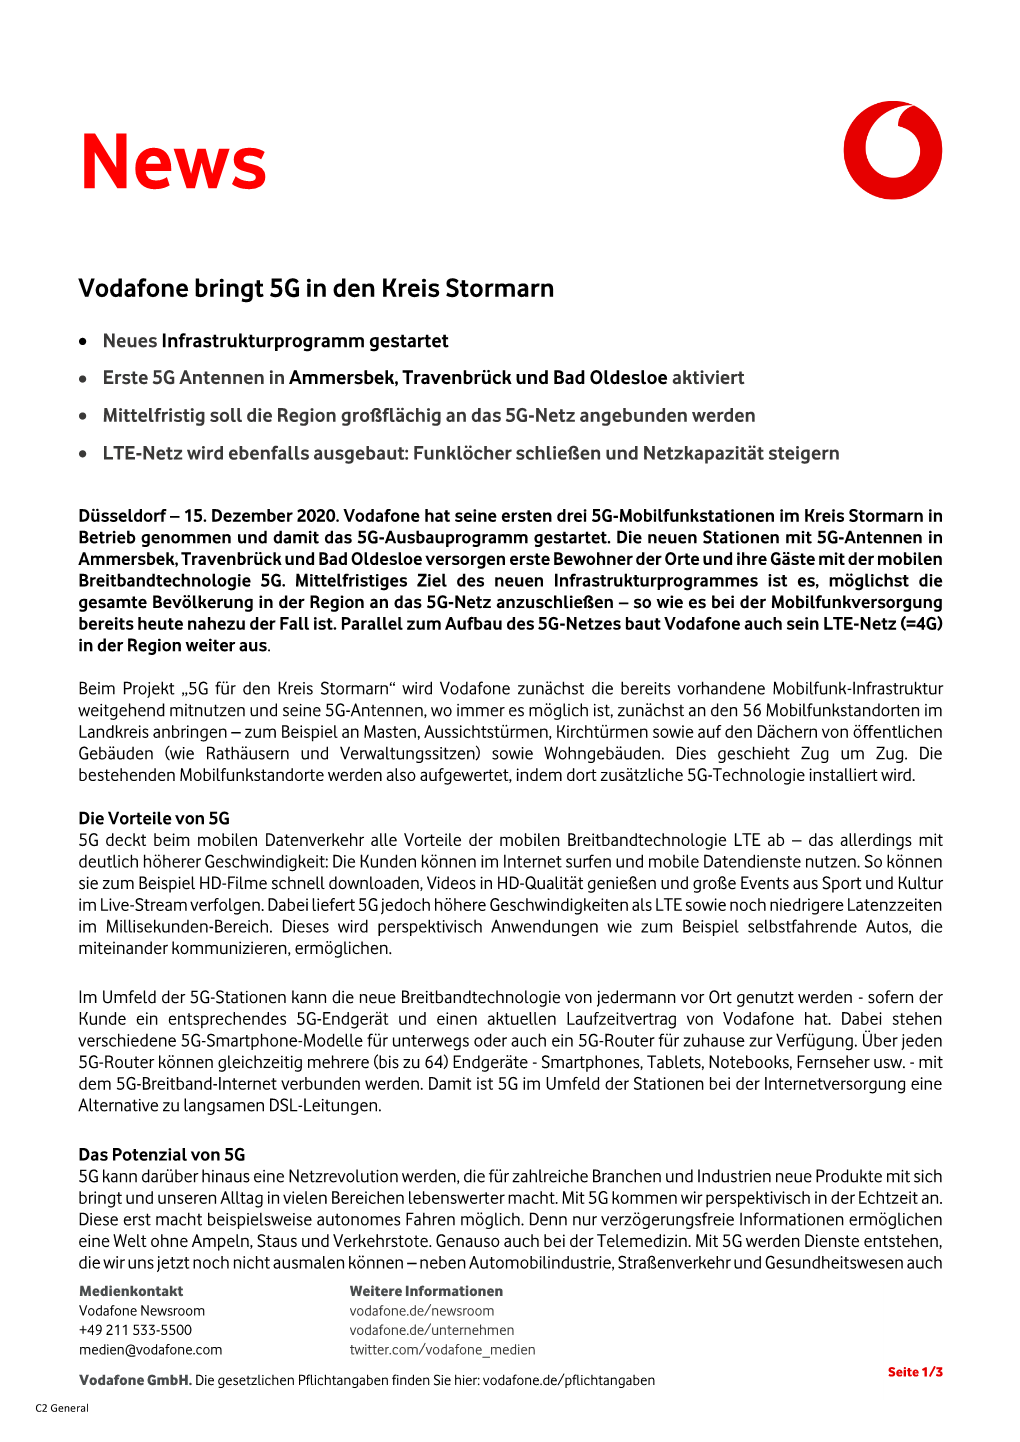 Vodafone Bringt 5G in Den Kreis Stormarn